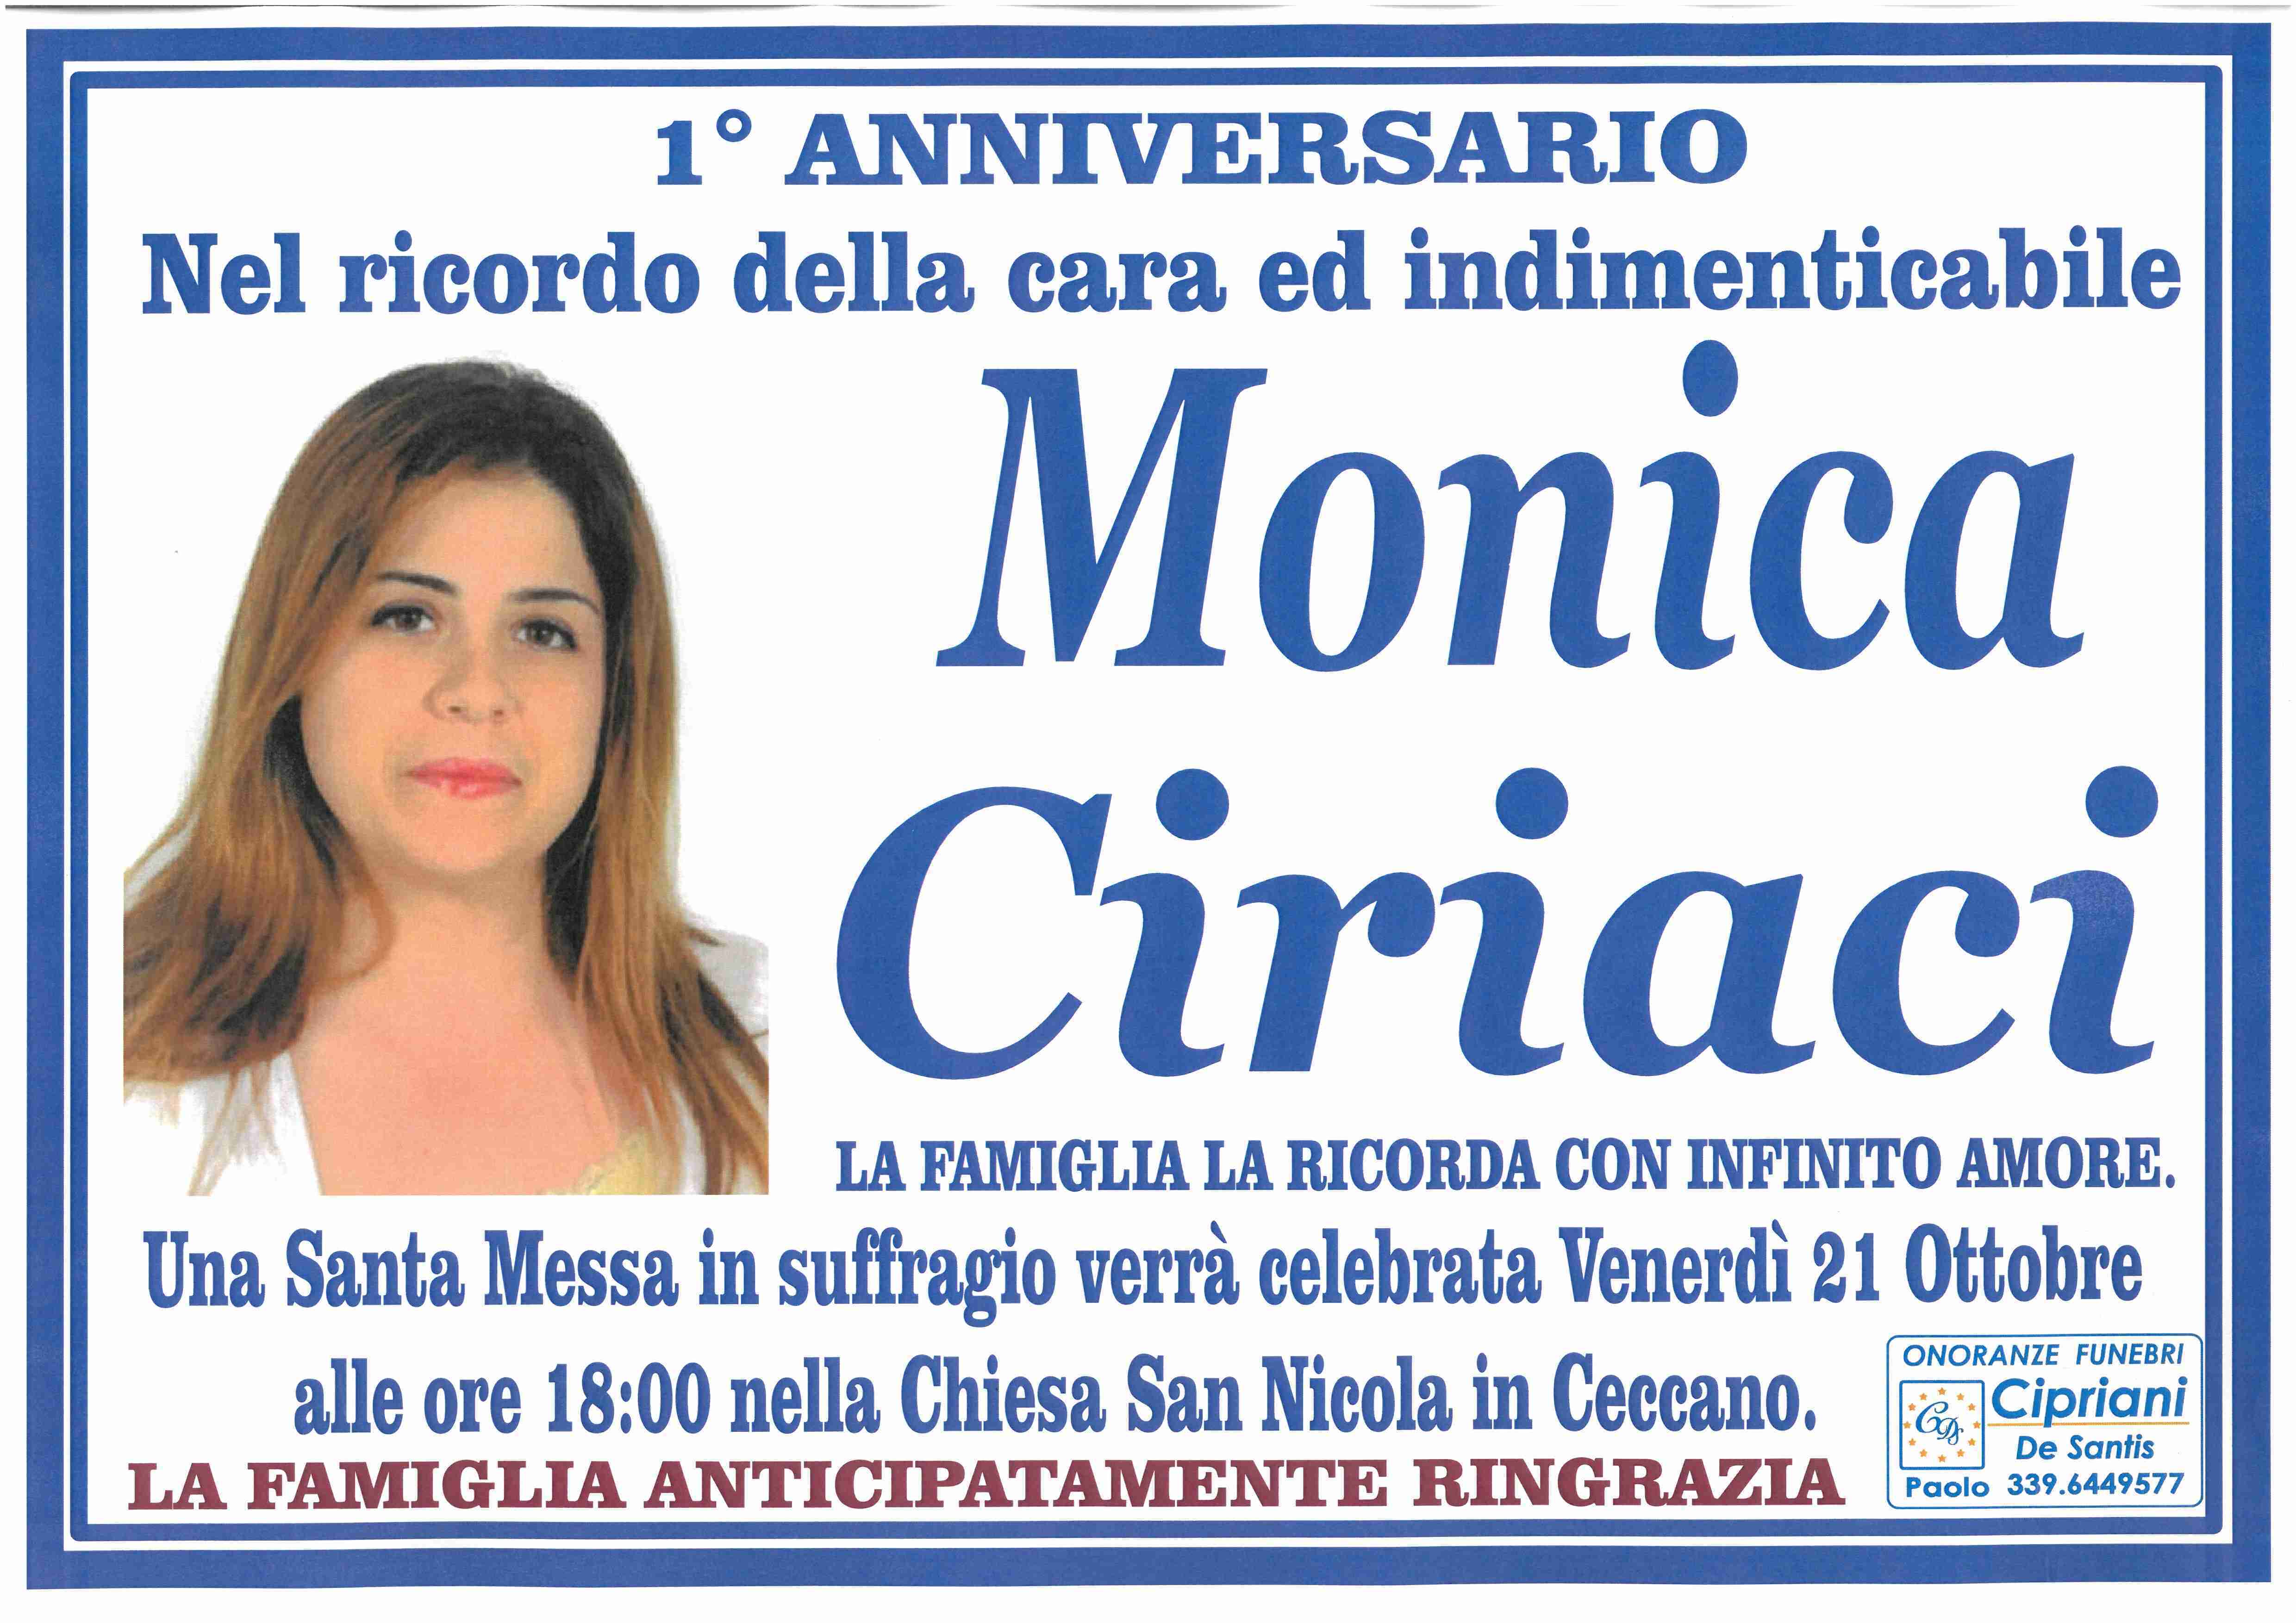 Monica Ciriaci